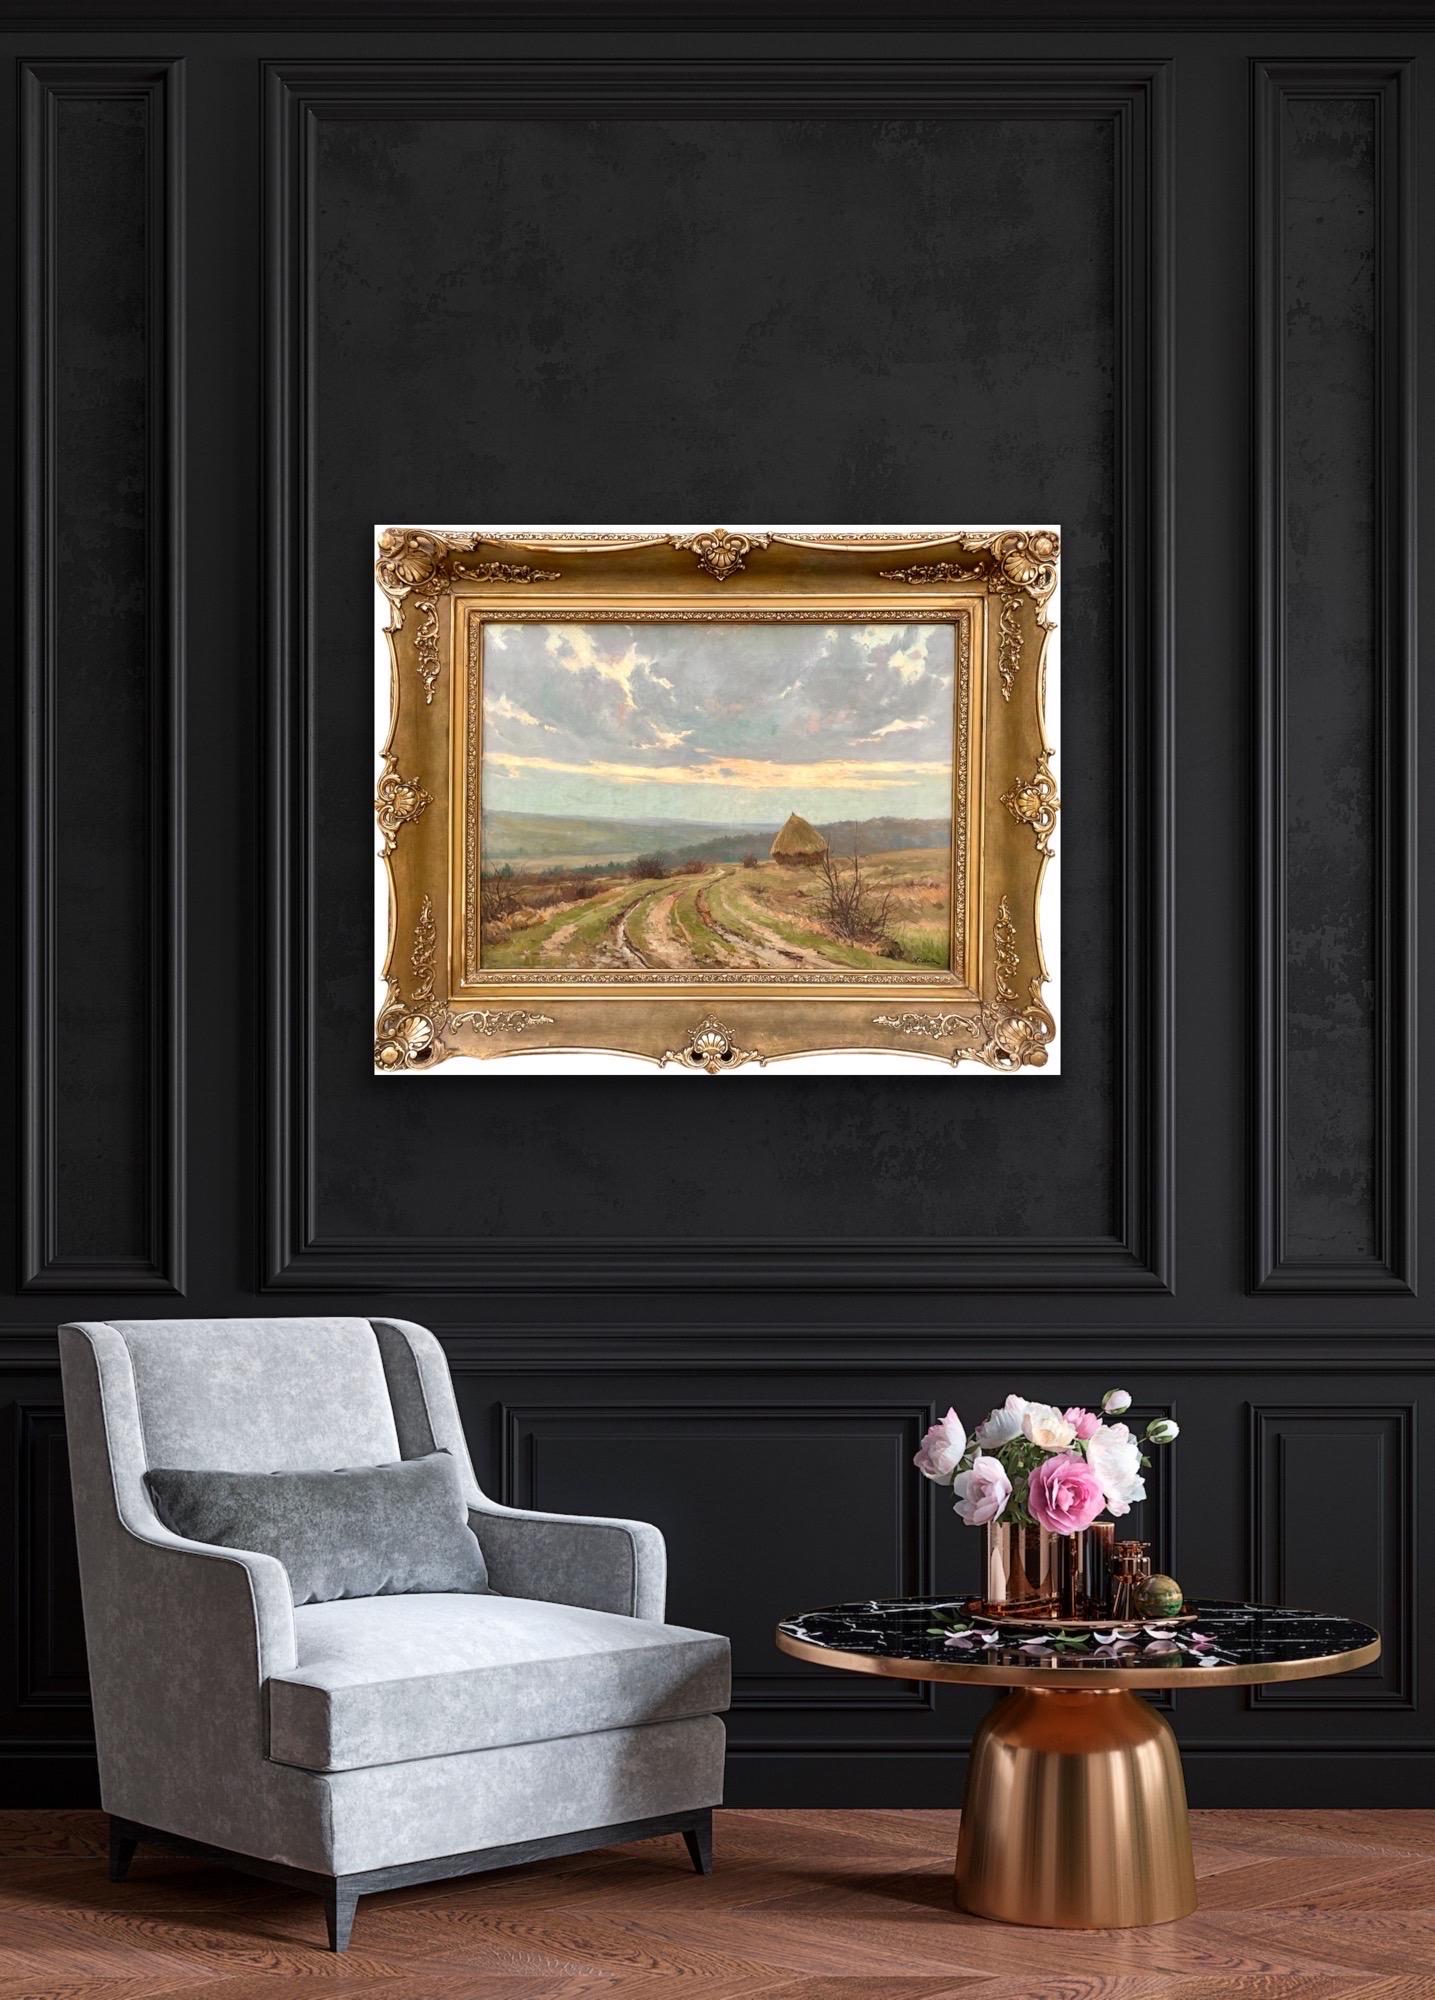 Large 19th century romantic painting - Hay Harvest - Une meule dans un paysage 2